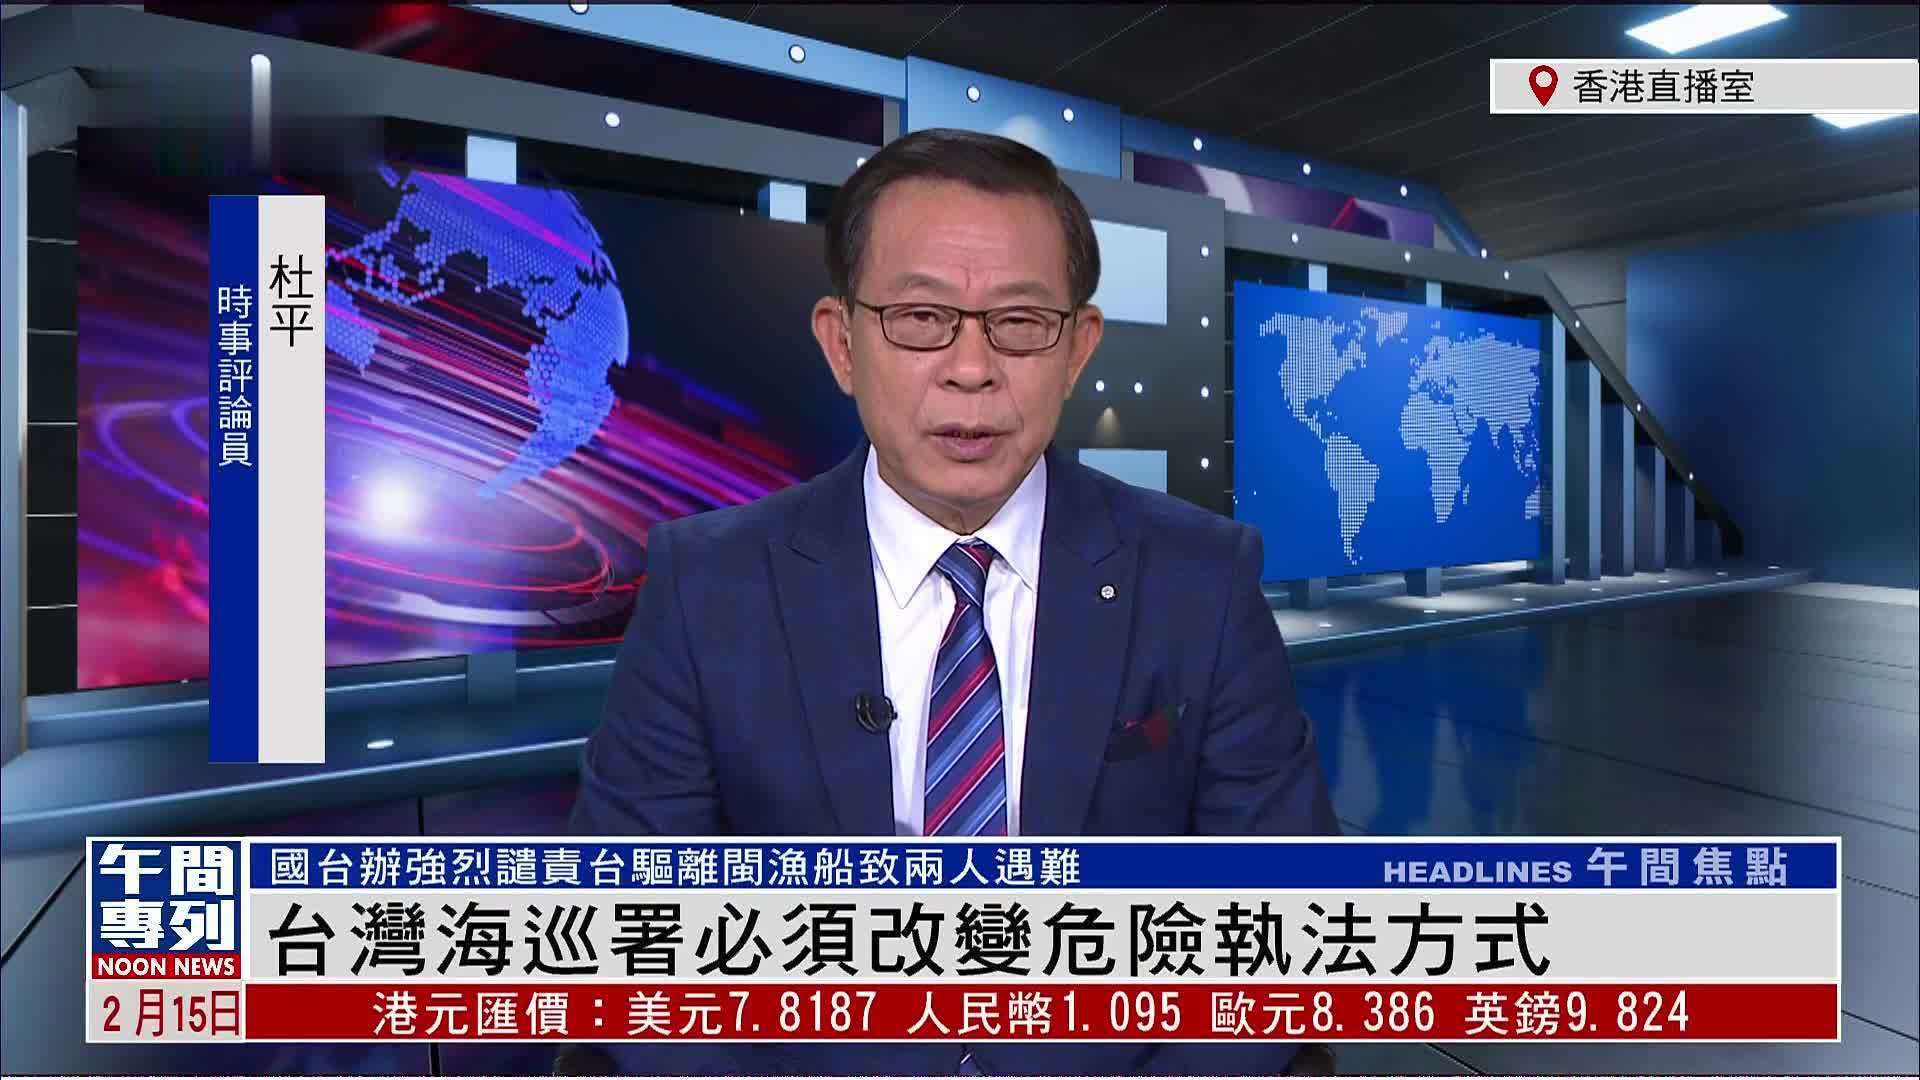 杜平:台湾海巡署必须改变危险执法方式